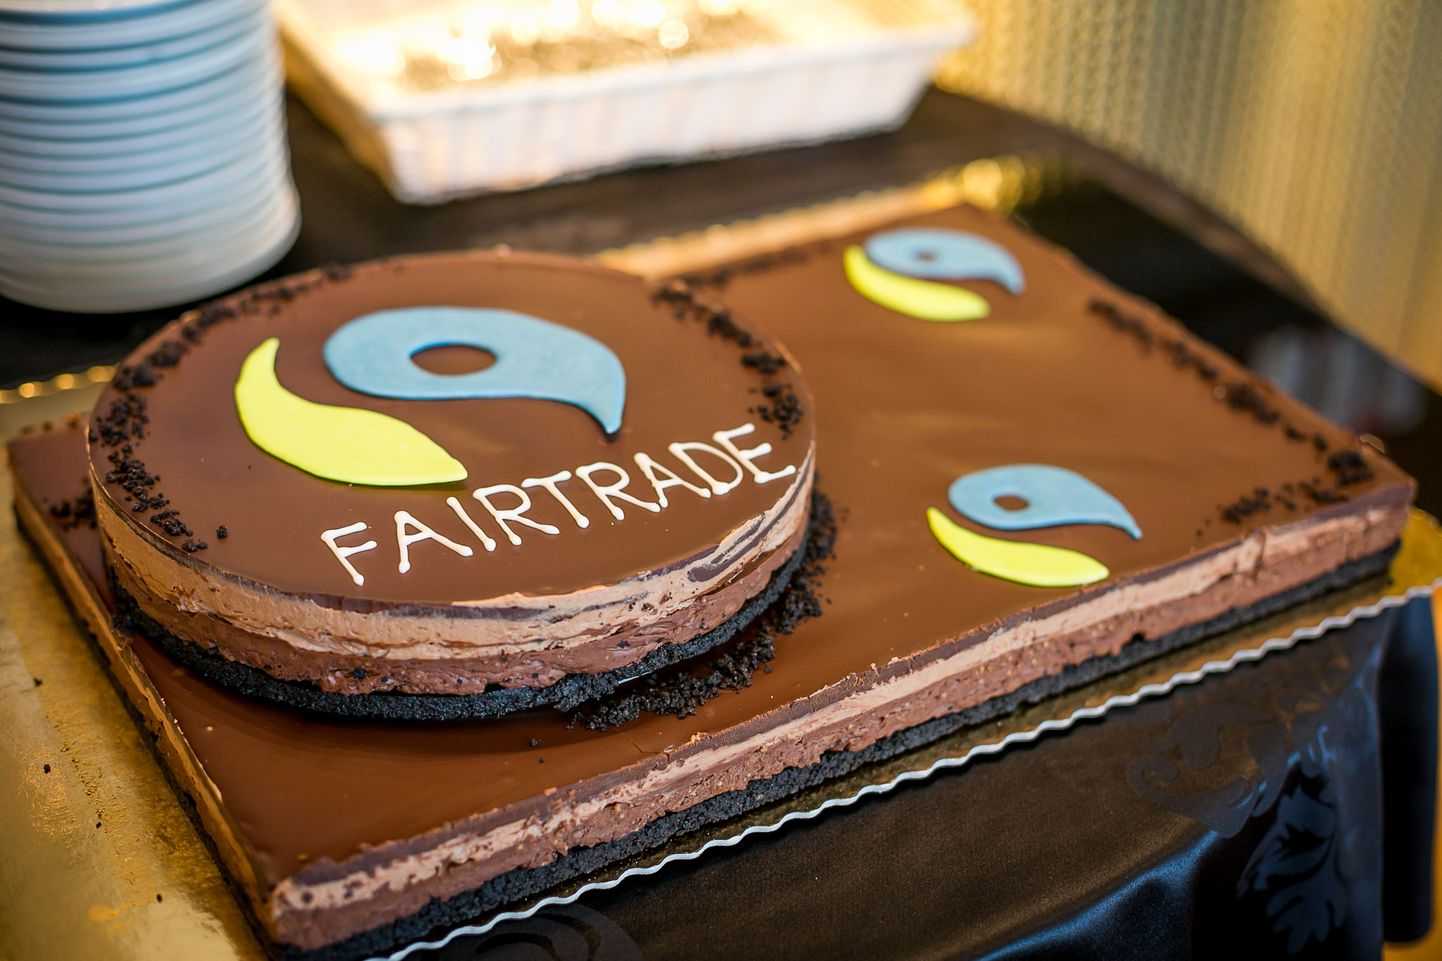 Õiglase kaubanduse tuntuim märgis on Fairtrade.